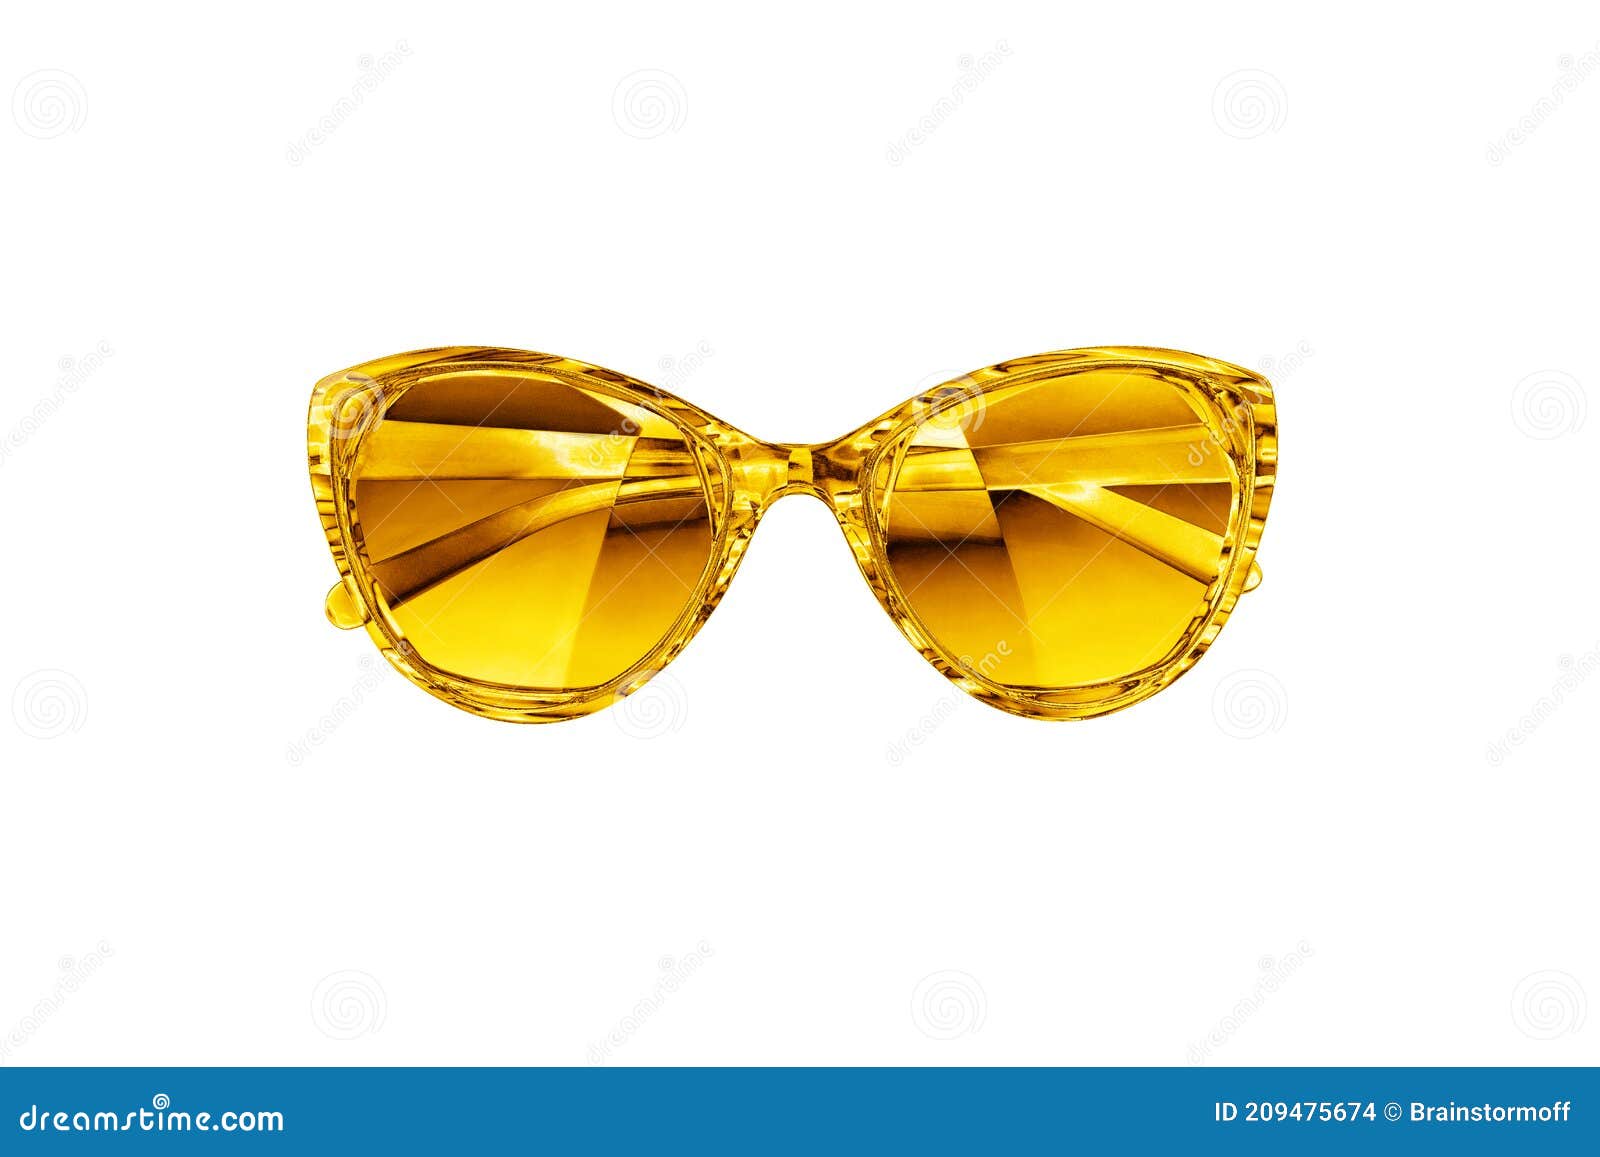 Gafas De Sol Doradas Fondo Blanco Aislado Cerrar Vidrio De Sol Metálico Brillante Gafas De Sol De Metal Amarillo Accesorio De Lujo Foto de archivo - Imagen primer, dorado: 209475674